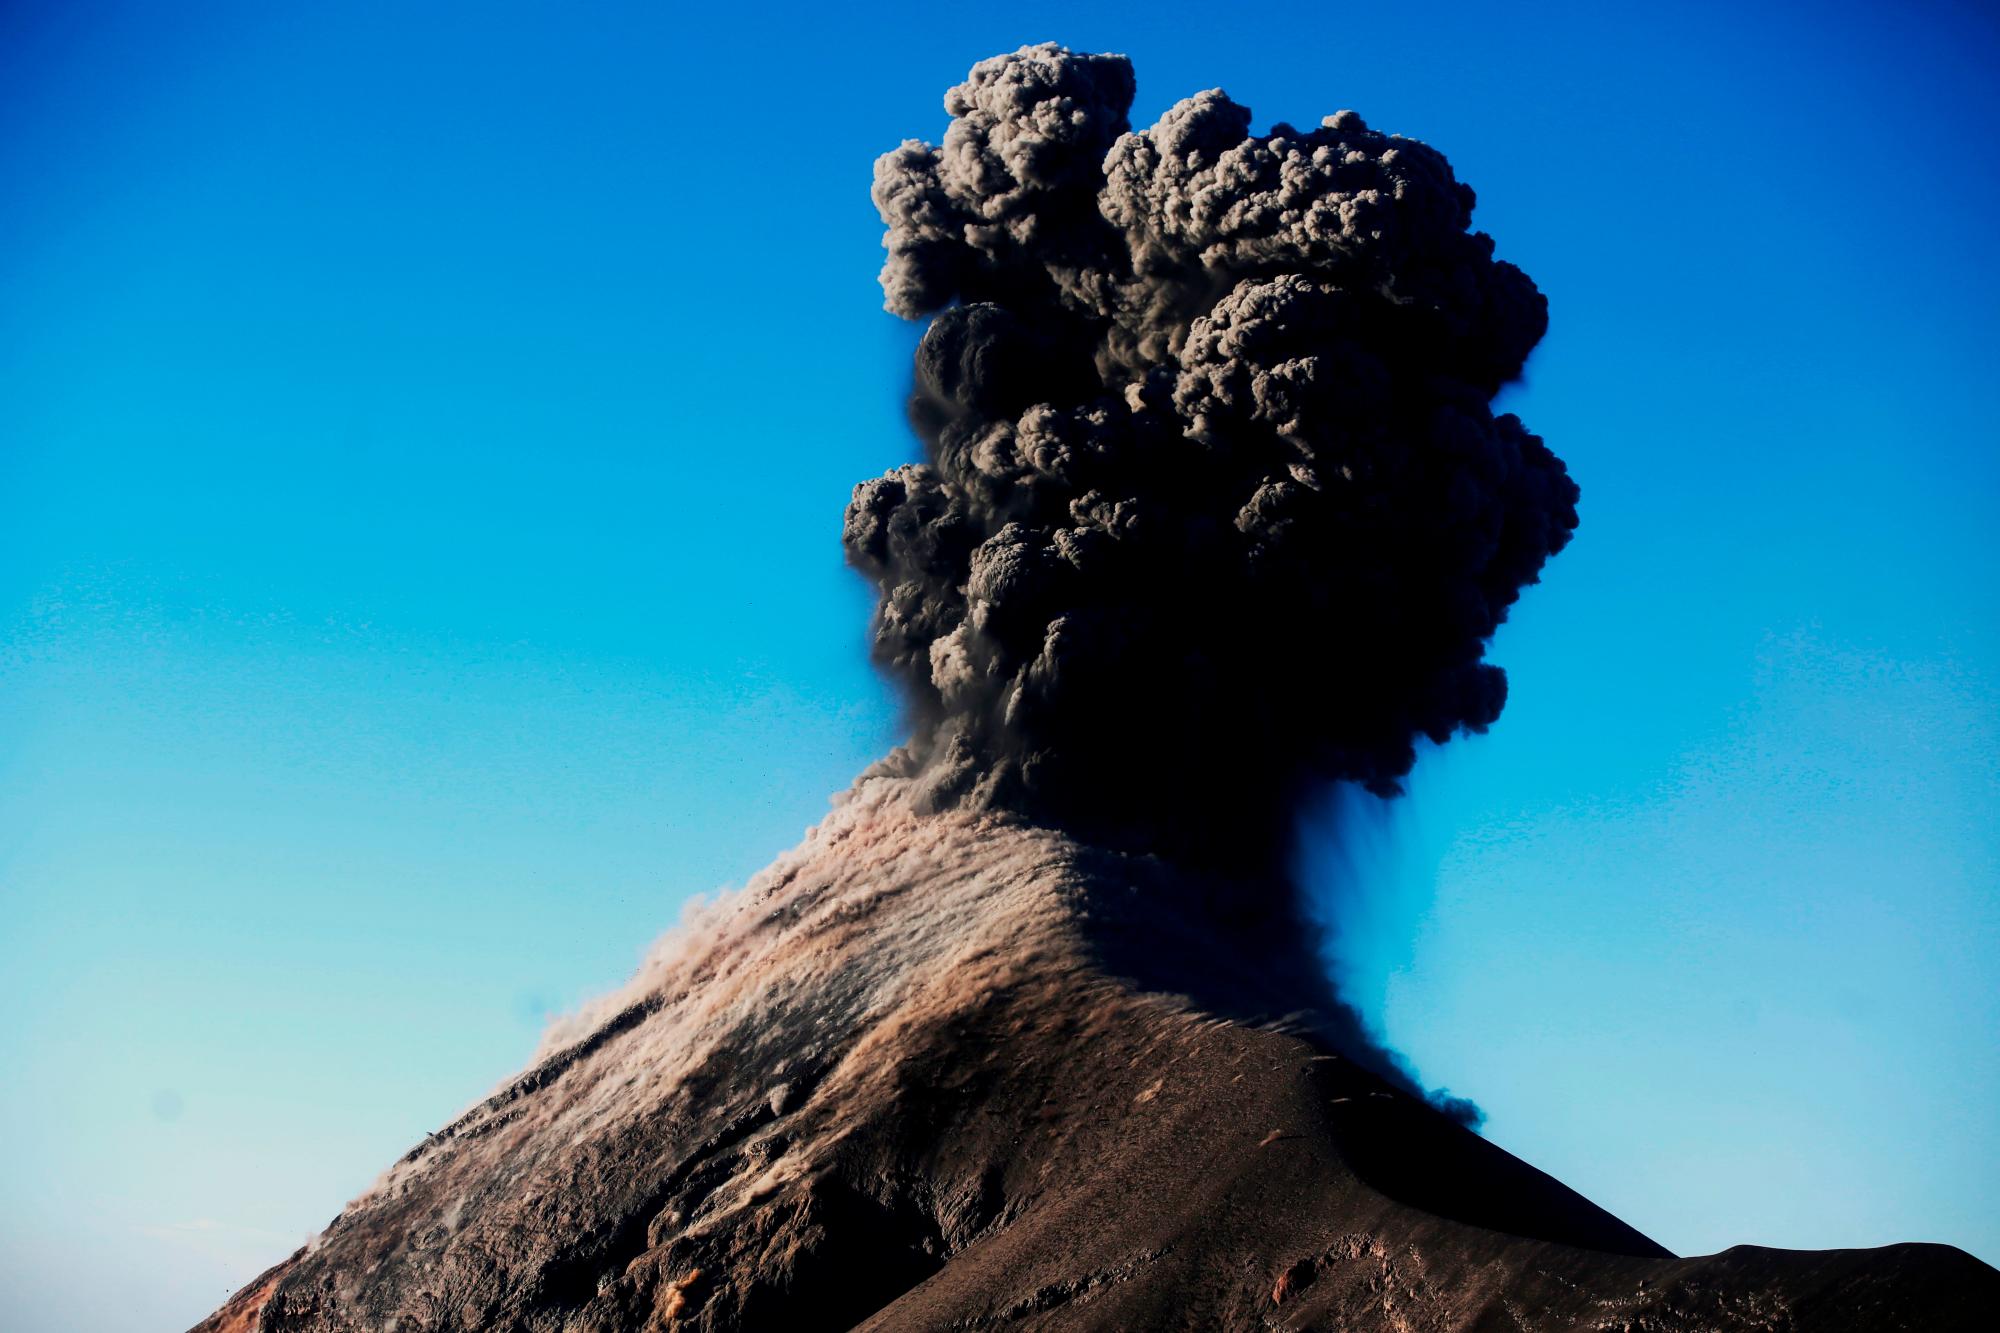 GU3008. ACATENANGO (GUATEMALA), 28/11/2018.- Fotografía del Volcán de Fuego con una columna de cenizas hoy, miércoles 28 de noviembre de 2018, desde un campamento una ladera del volcán de Acatenango (Guatemala). Según la Coordinadora Nacional para la Reducción de desastres (CONRED) el volcán presentó hoy de siete a diez explosiones por hora con características moderadas y fuertes y columnas de ceniza a una altura aproximada de 5.000 metros sobre el nivel del mar. 